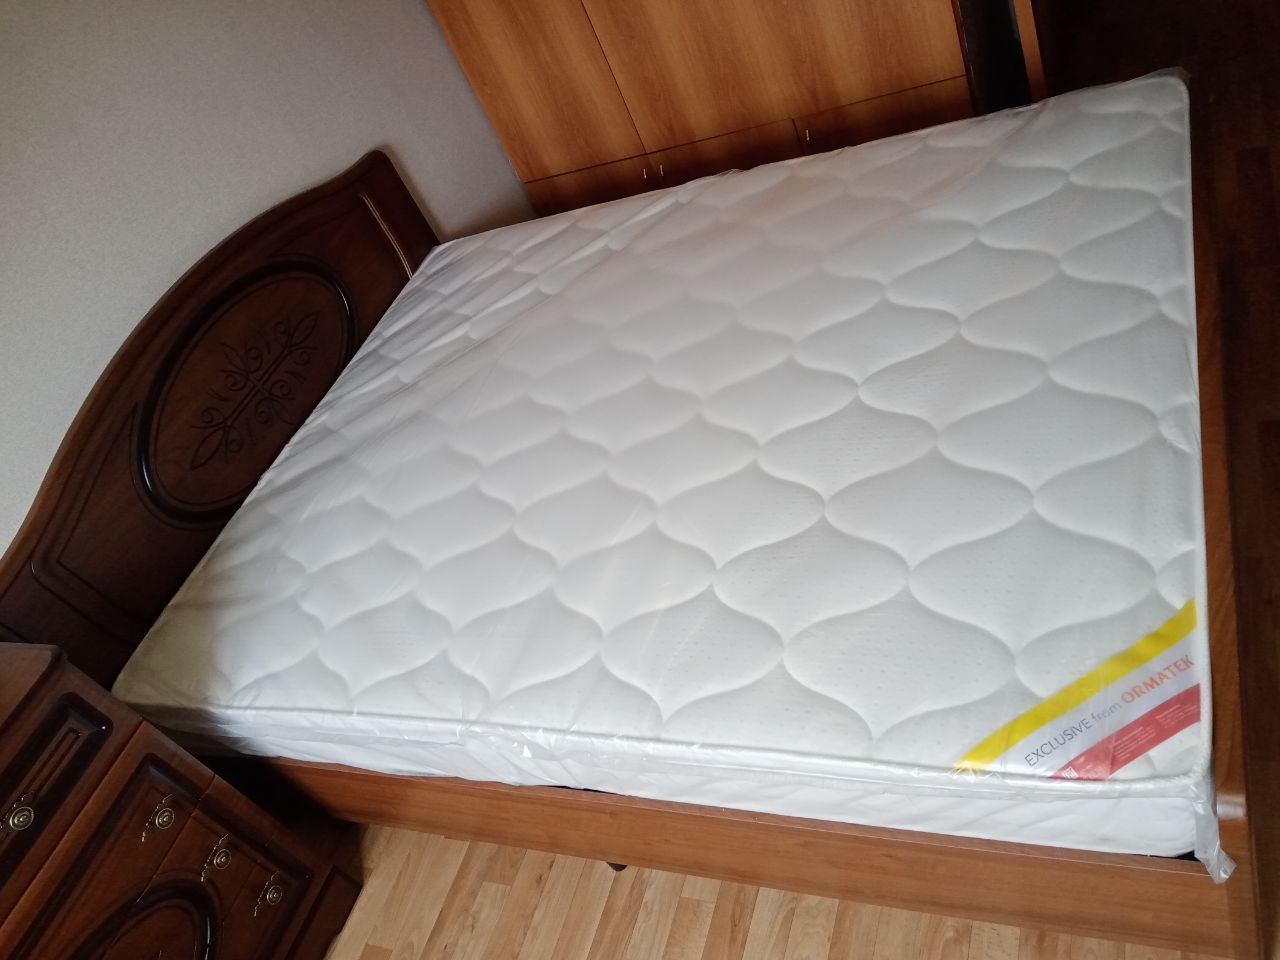 Полутораспальная кровать "Натали"120 х 200 с подъемным мех-ом цвет клен/ясень беж-ый изножье высокое